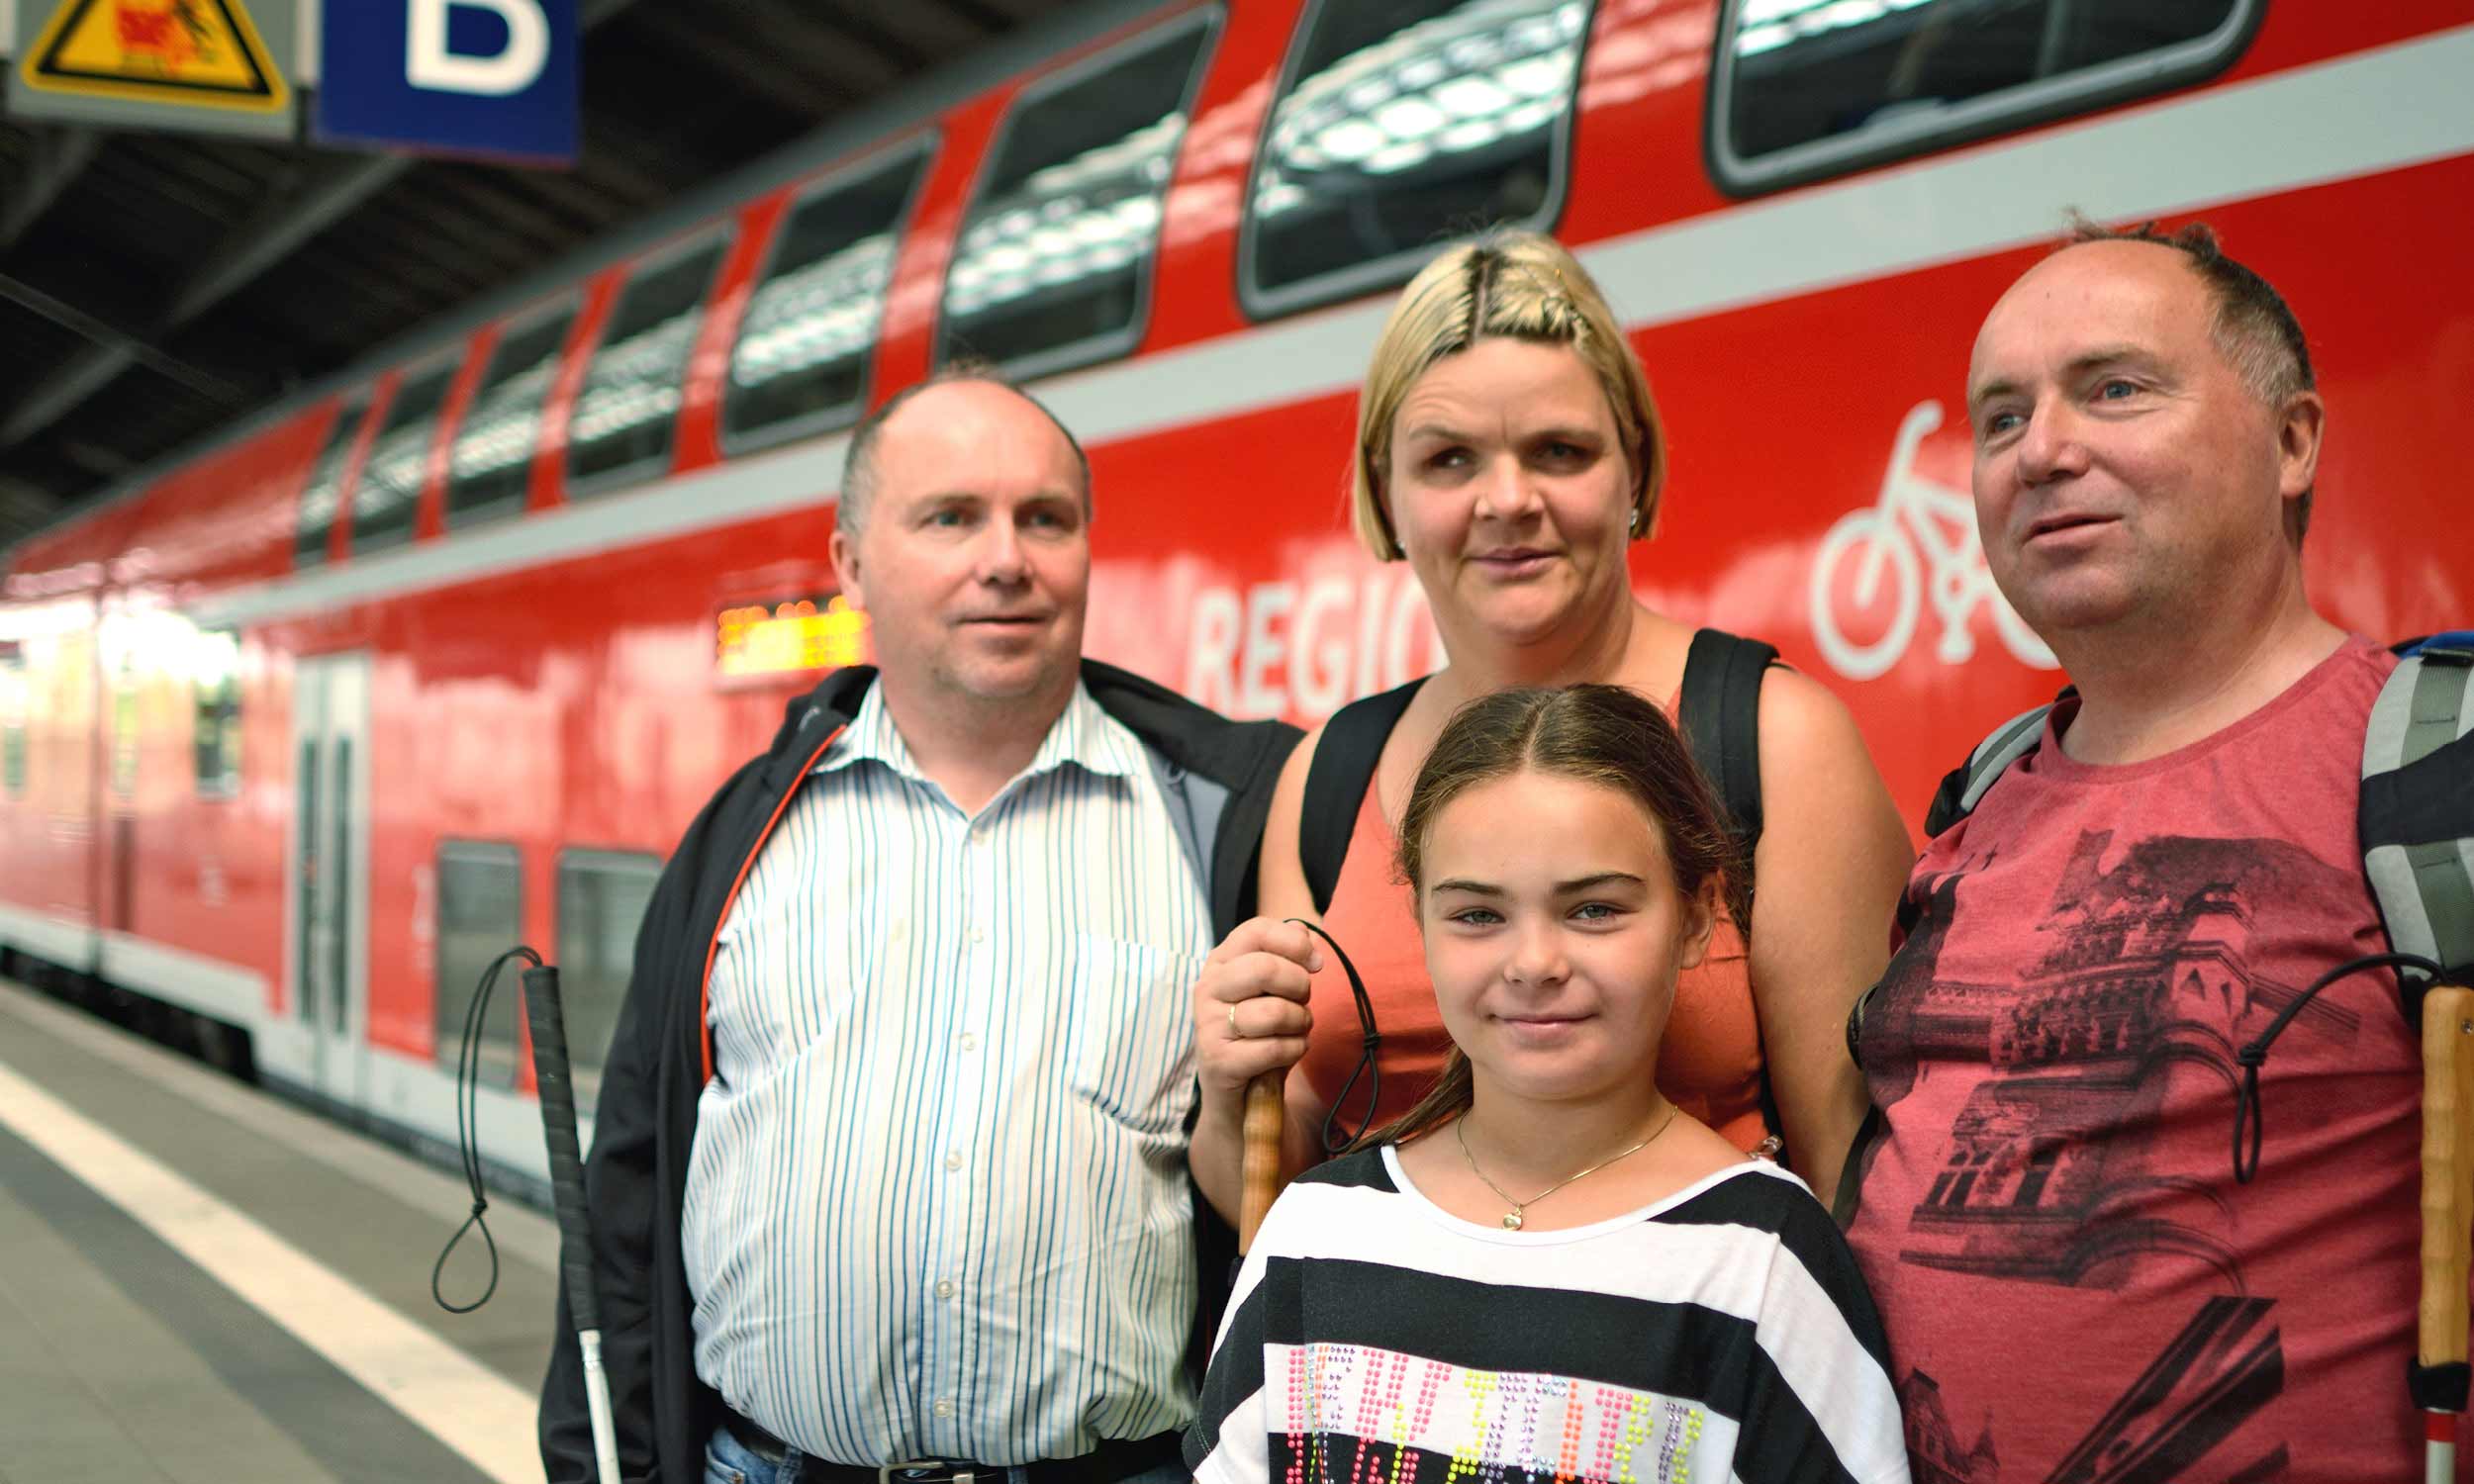 Gruppenfoto von Touristen in Berlin – zwei erwachsene blinde Brüder und eine blinde Ehefrau mit sehender Tochter. Sie stehen am Bahnsteig vor einem roten doppelstöckigen Regionalexpress